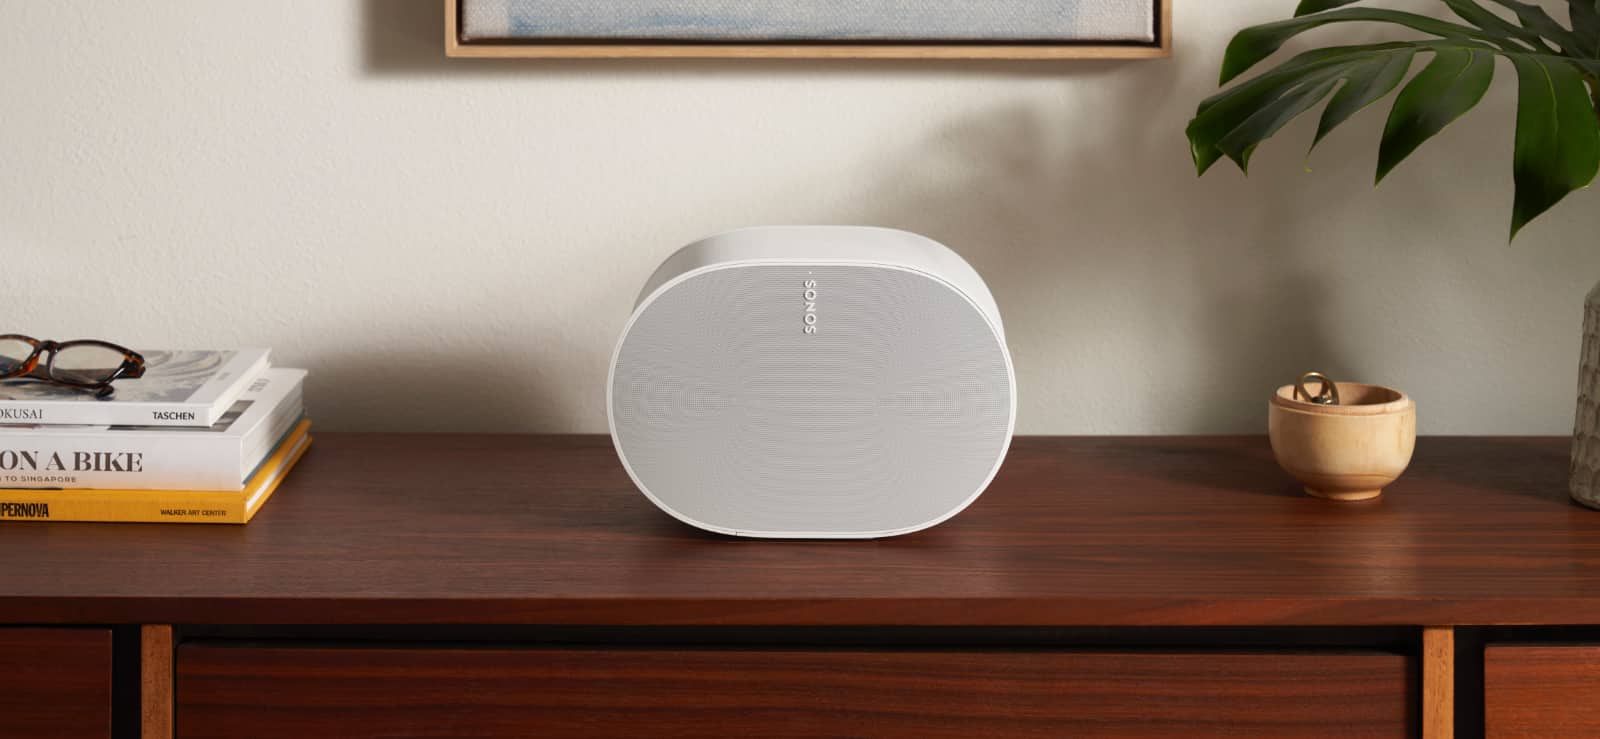 Можете ли вы передавать пространственное аудио по всему дому с помощью Sonos?  — Бейкер